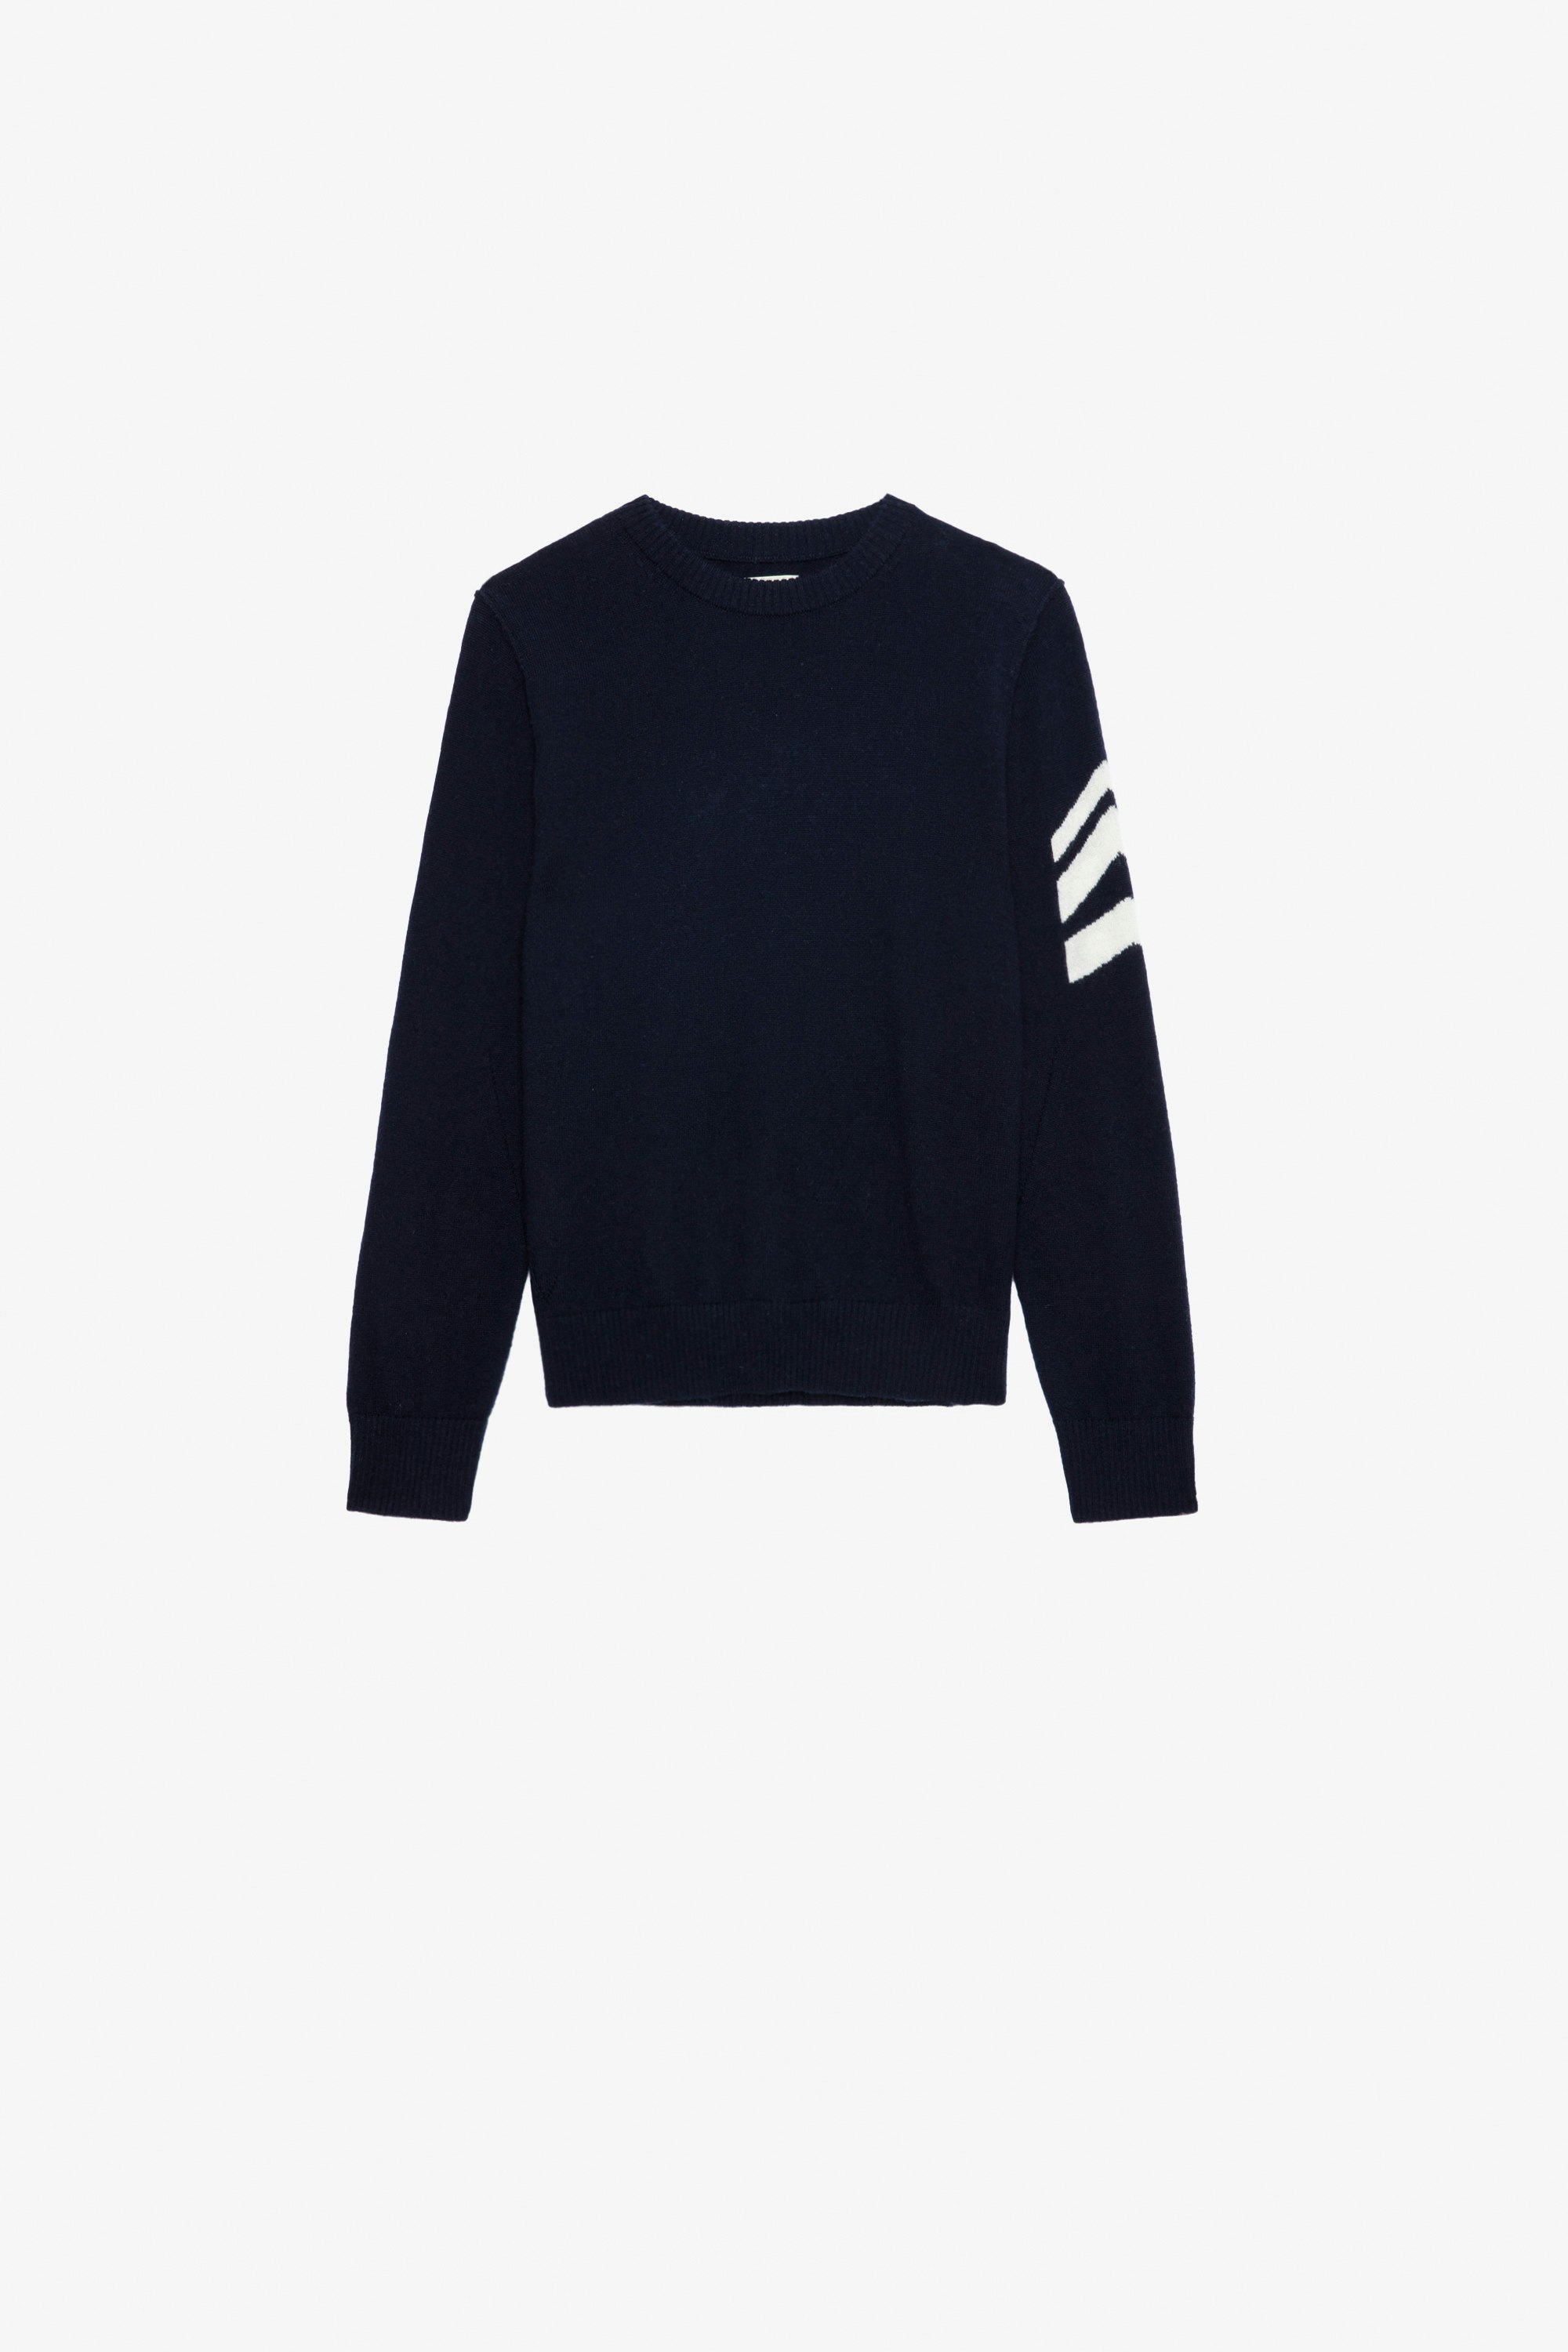 Chris Boys’ Jumper - Boys’ navy blue knit jumper with “Dreamer” slogan.